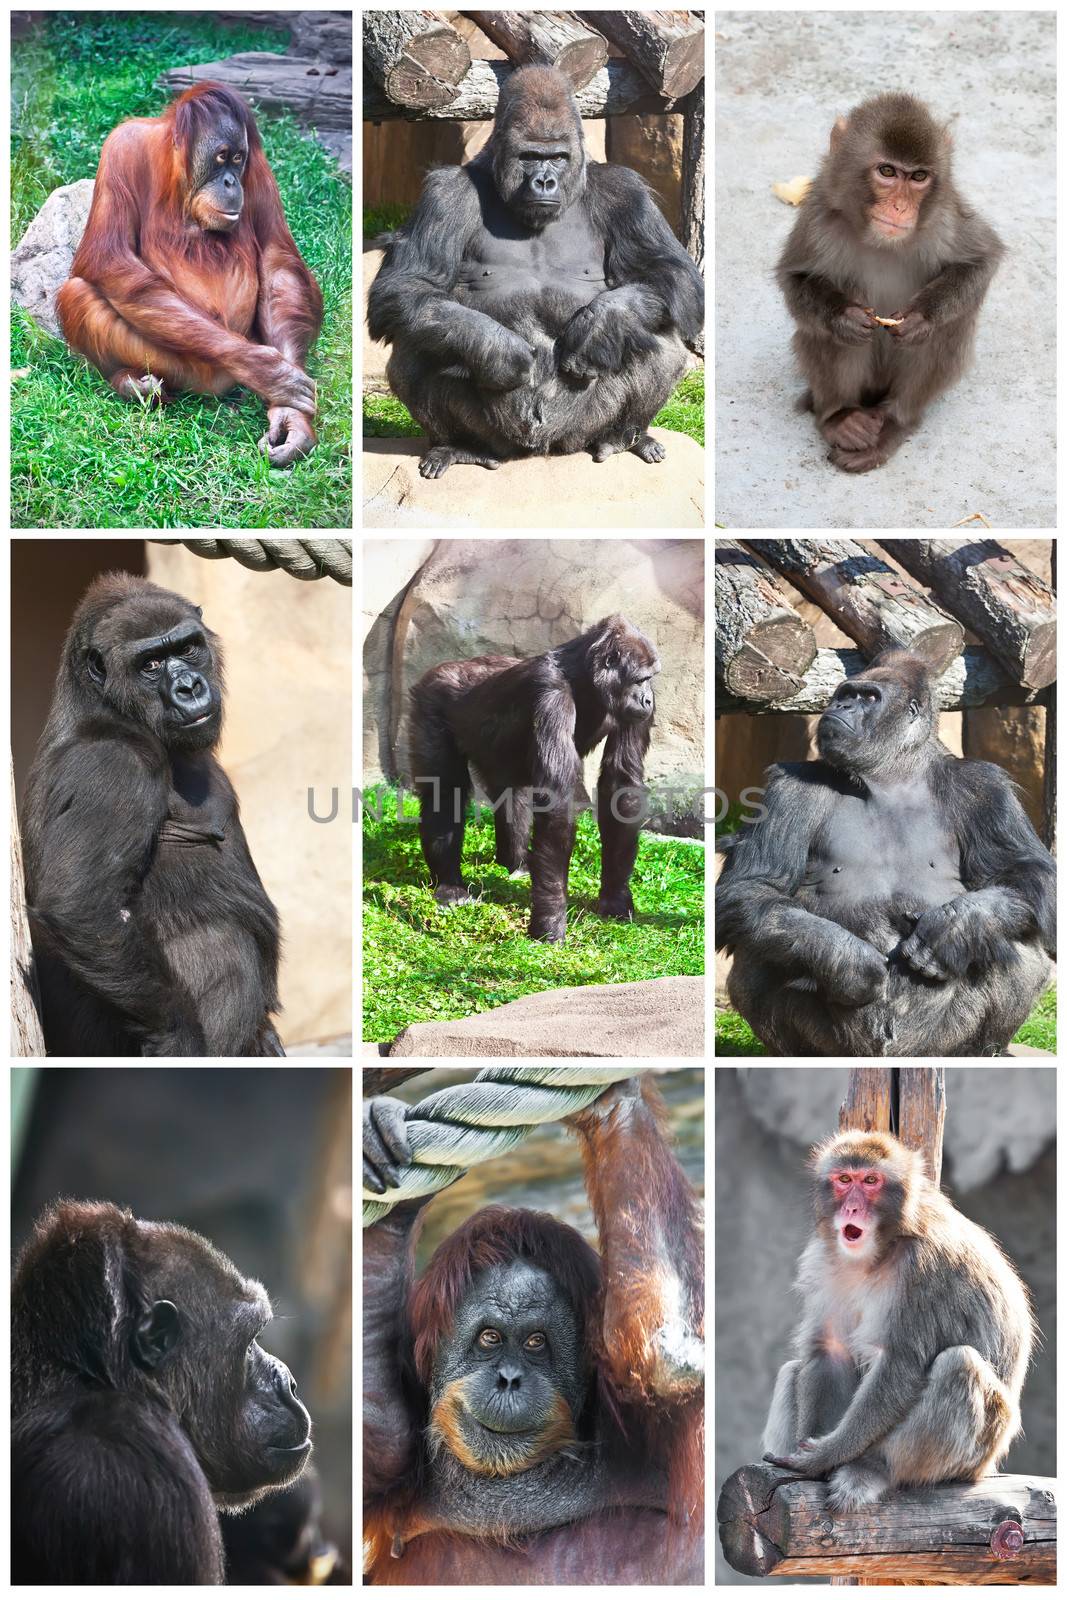 Nice photos of cute monkeys in zoo